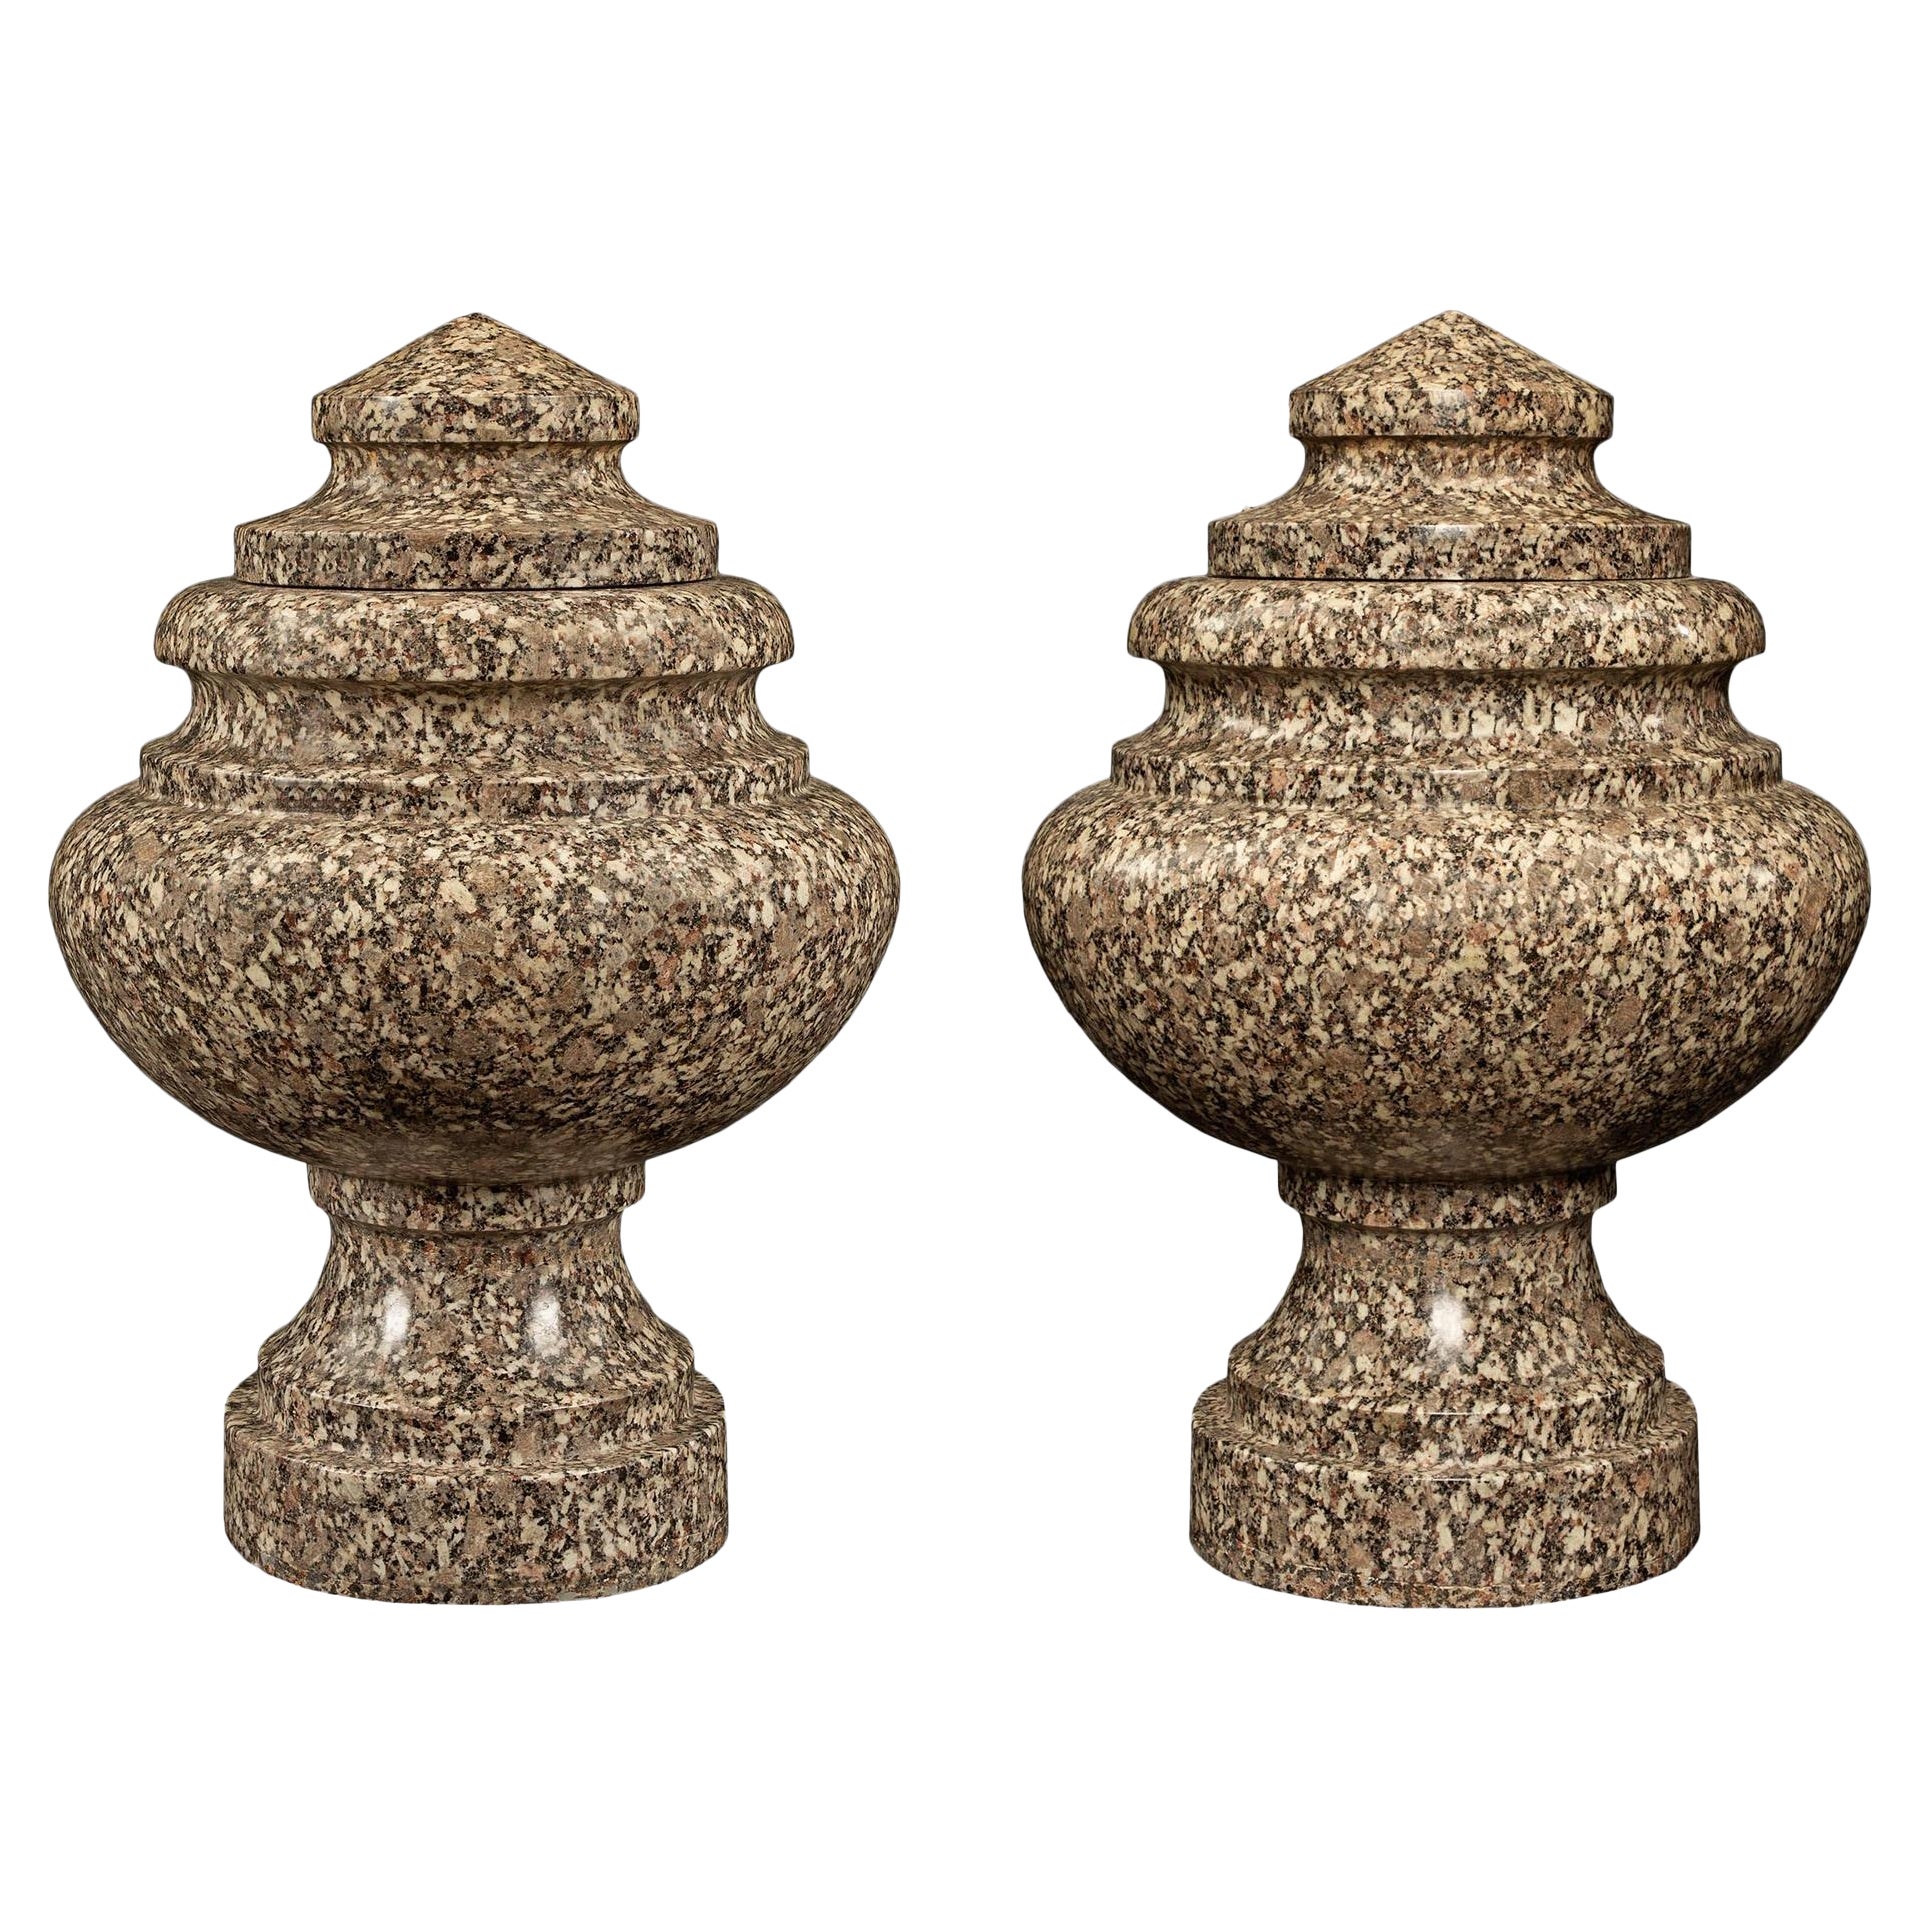 Paire d'urnes à couvercle en granit de style néo-classique italien du 19ème siècle